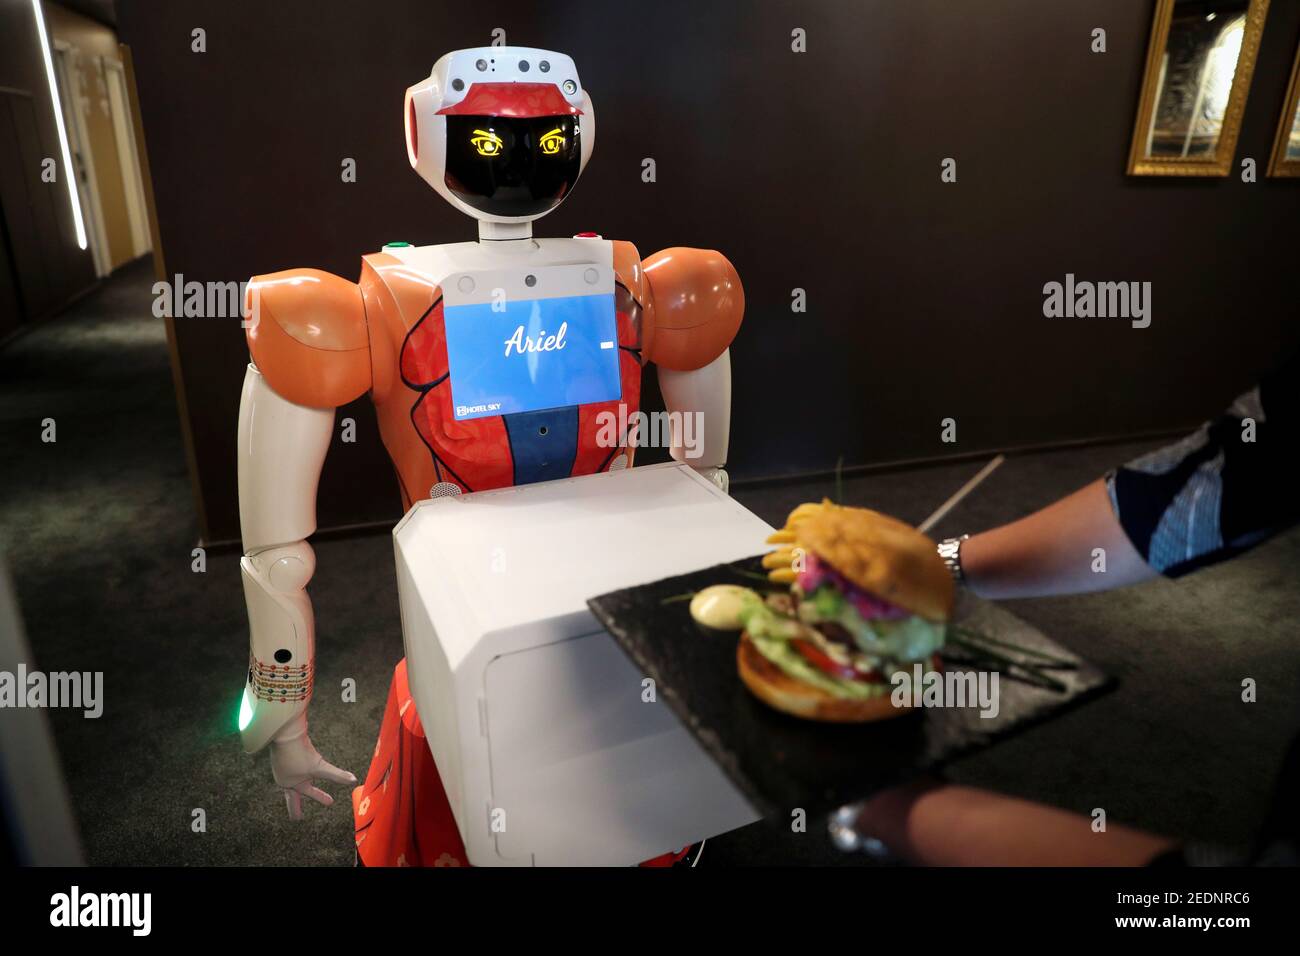 El robot Ariel, impulsado por AI, ofrece servicio de habitaciones a un  huésped en el Hotel Sky, el primero en África en usar asistentes  automatizados, en Johannesburgo, Sudáfrica, el 9 de febrero